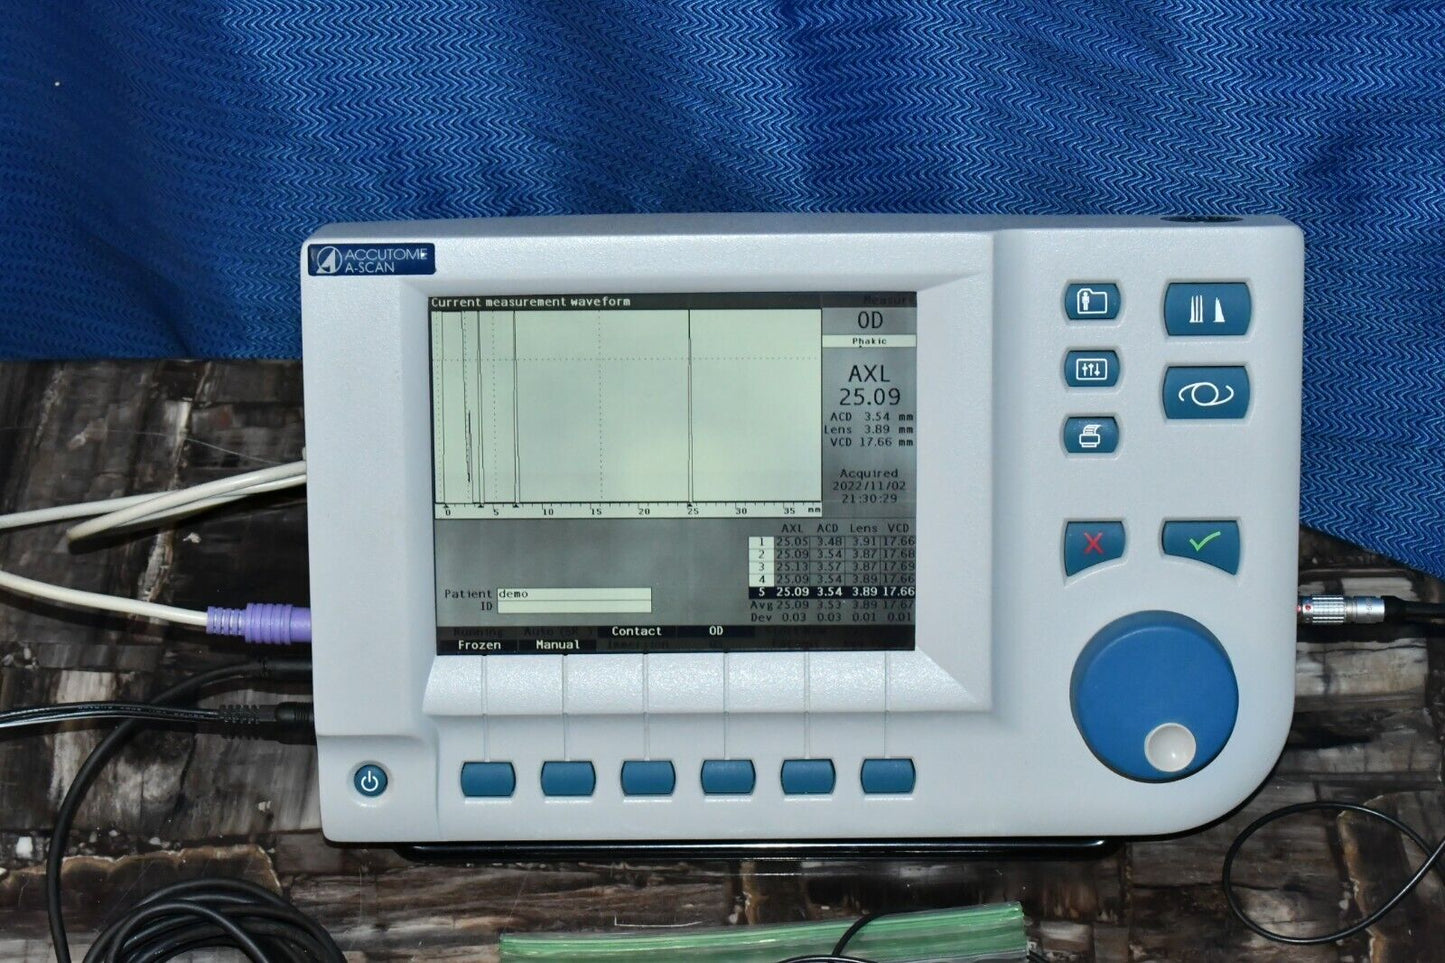 Accutome A scan plus ultrasound biometer IOL calculator